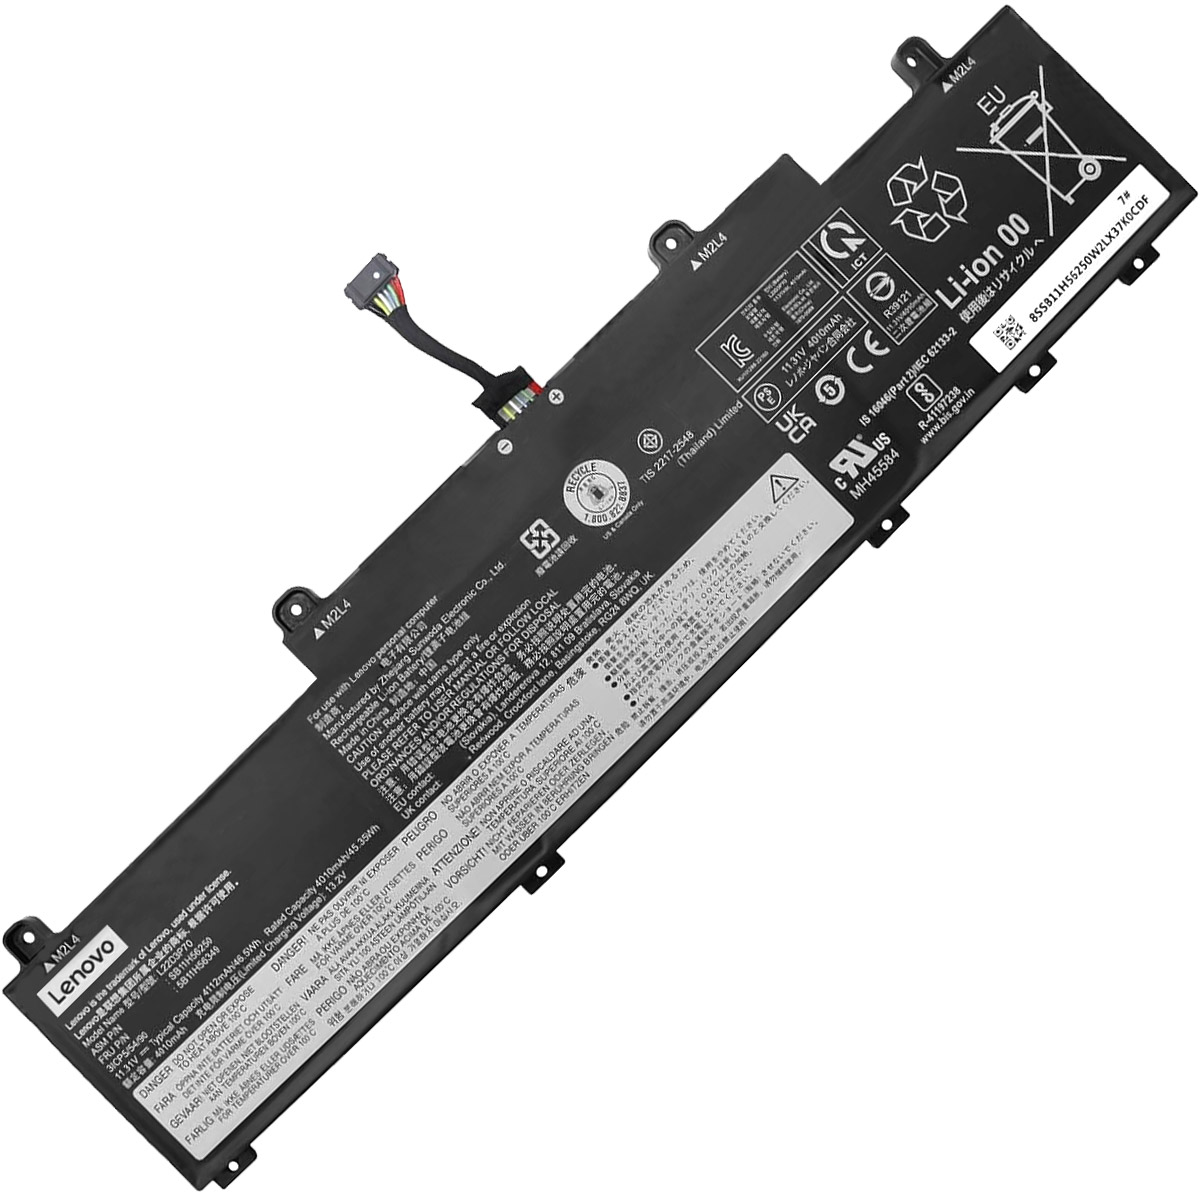 LENOVO-L22X3P70/L22D3P70-Laptop Replacement Battery